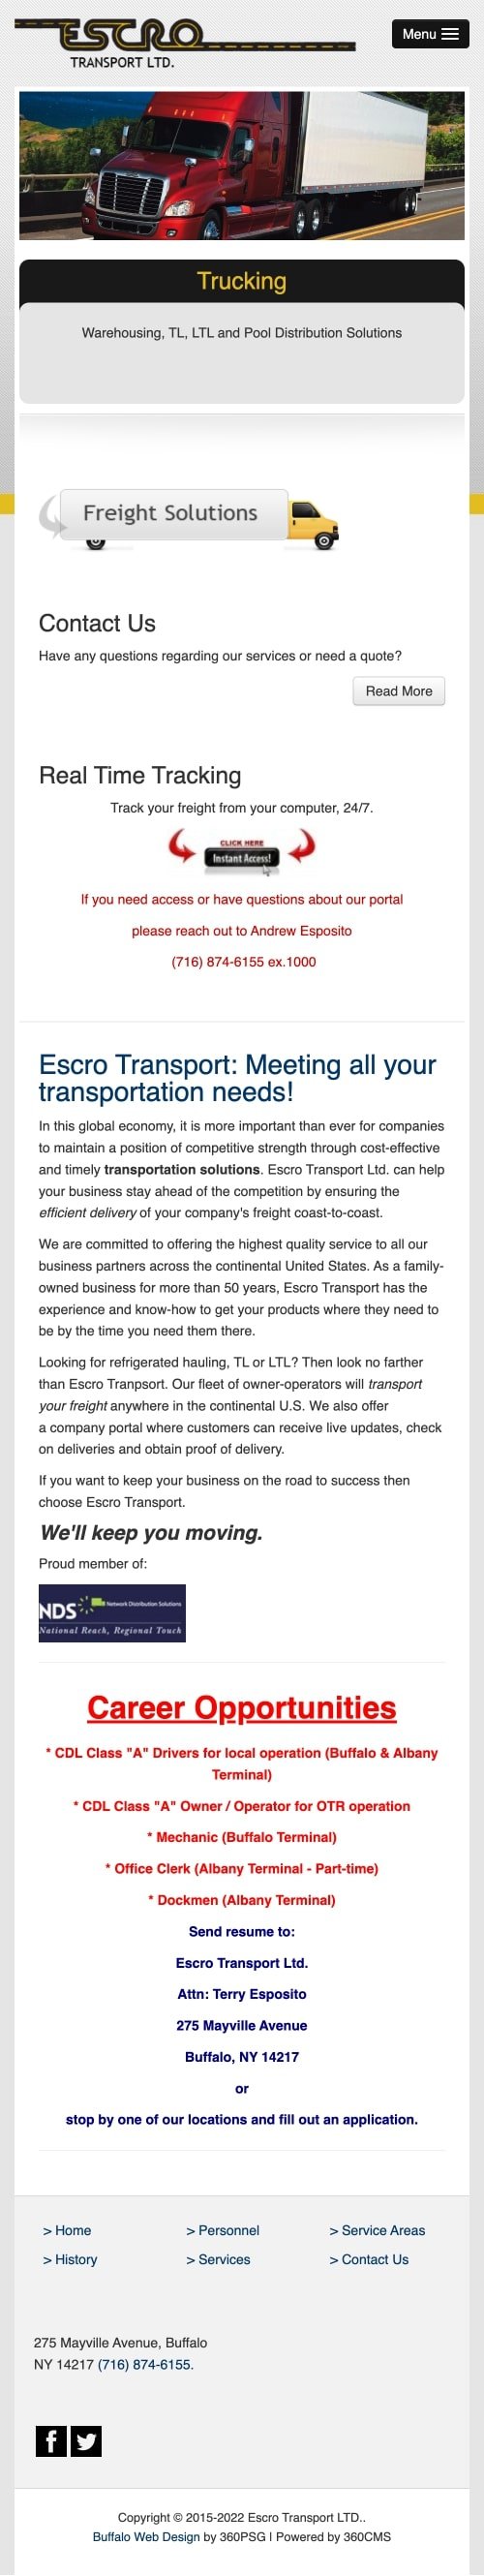 Escro Transport Website - Mobile